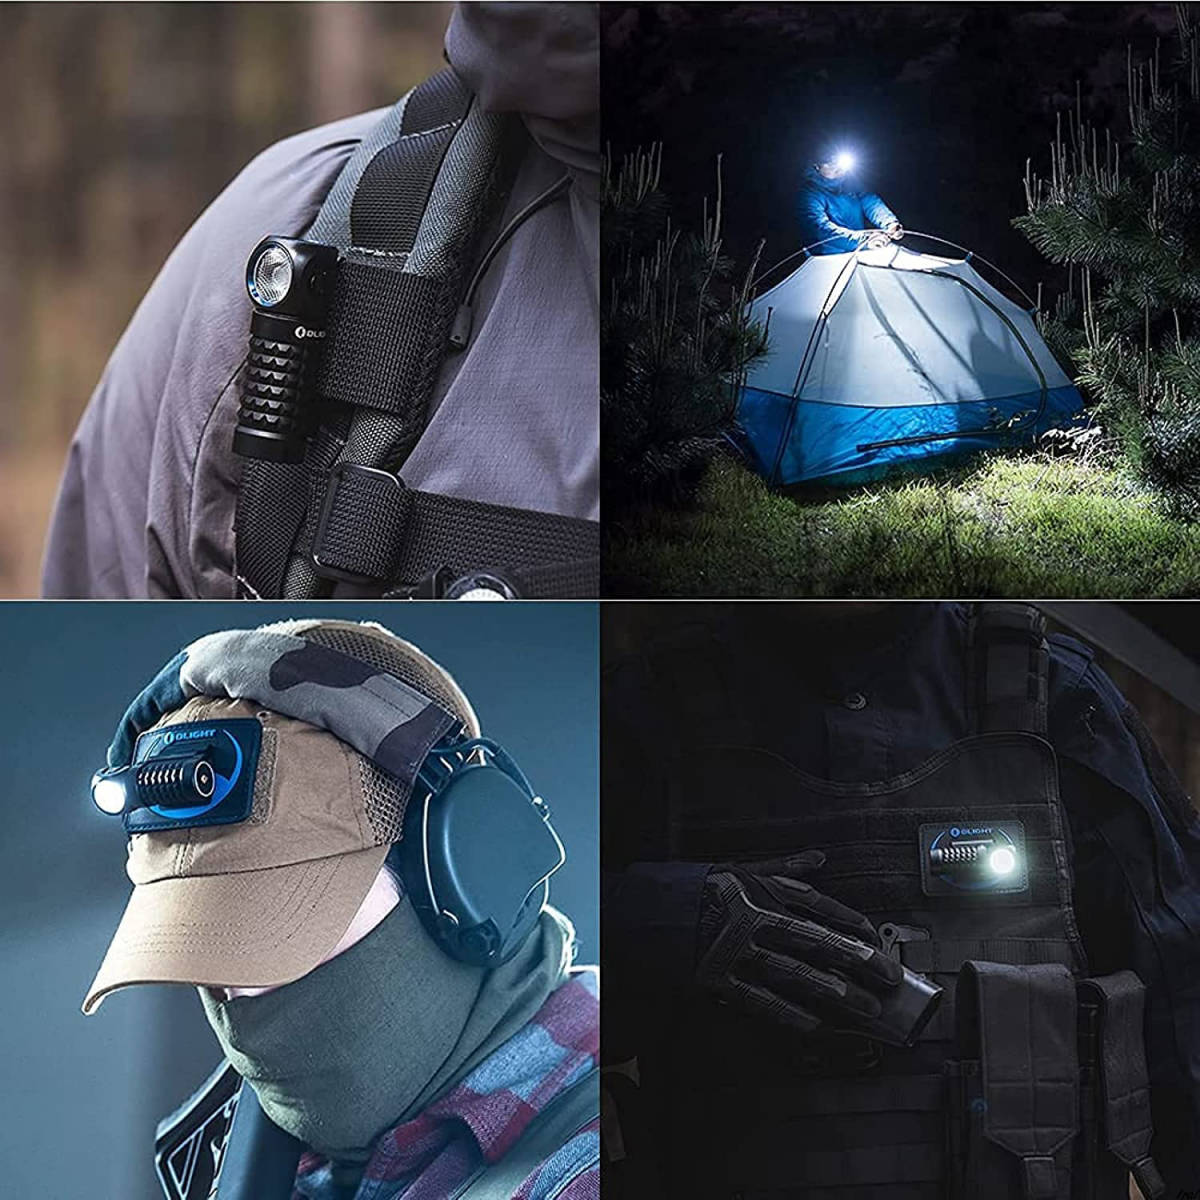 ヘッドライト 高輝度 USB 充電式 LED ヘッドランプ IPX8防水 登山 キャンプ 散歩 作業 釣り アウトドア キャンプ 防災